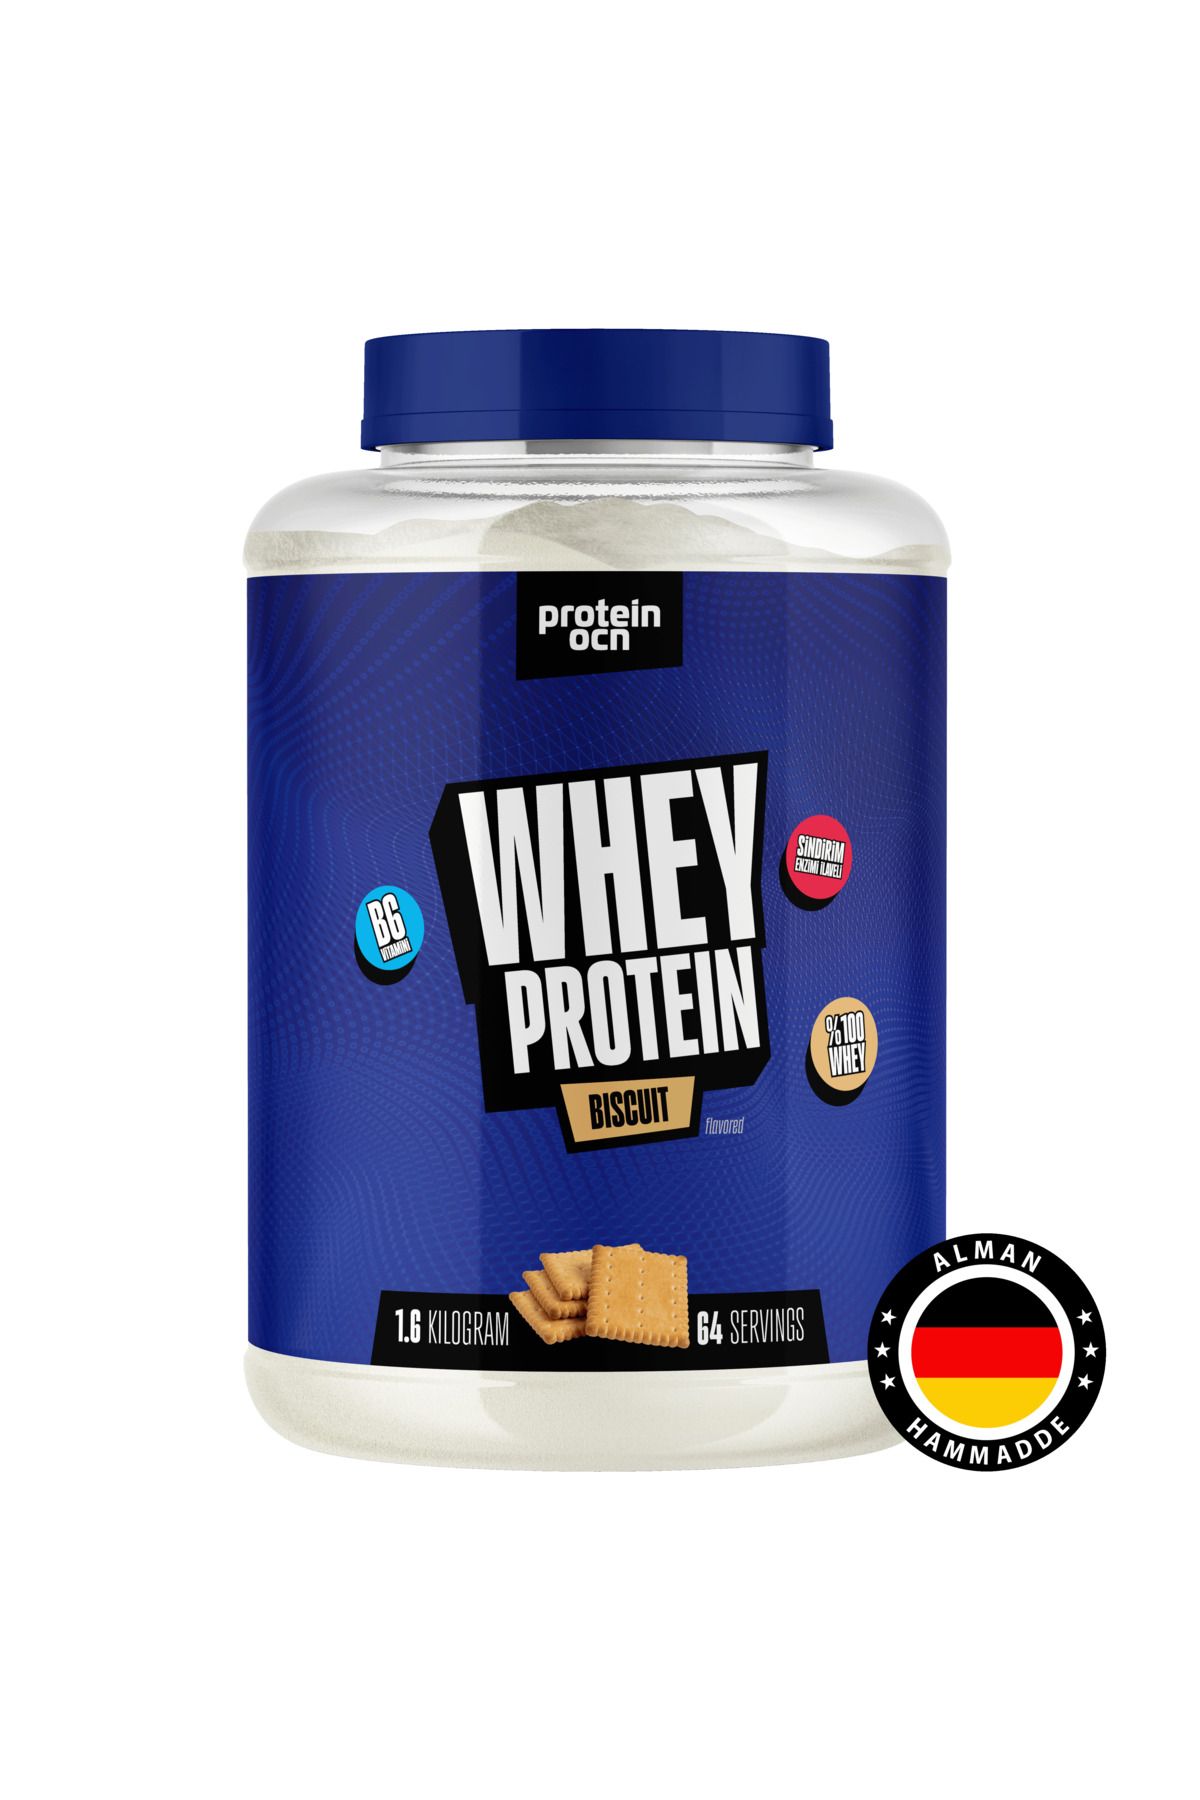 Proteinocean Whey Protein Bisküvi - 1.6 kg - 64 Servis